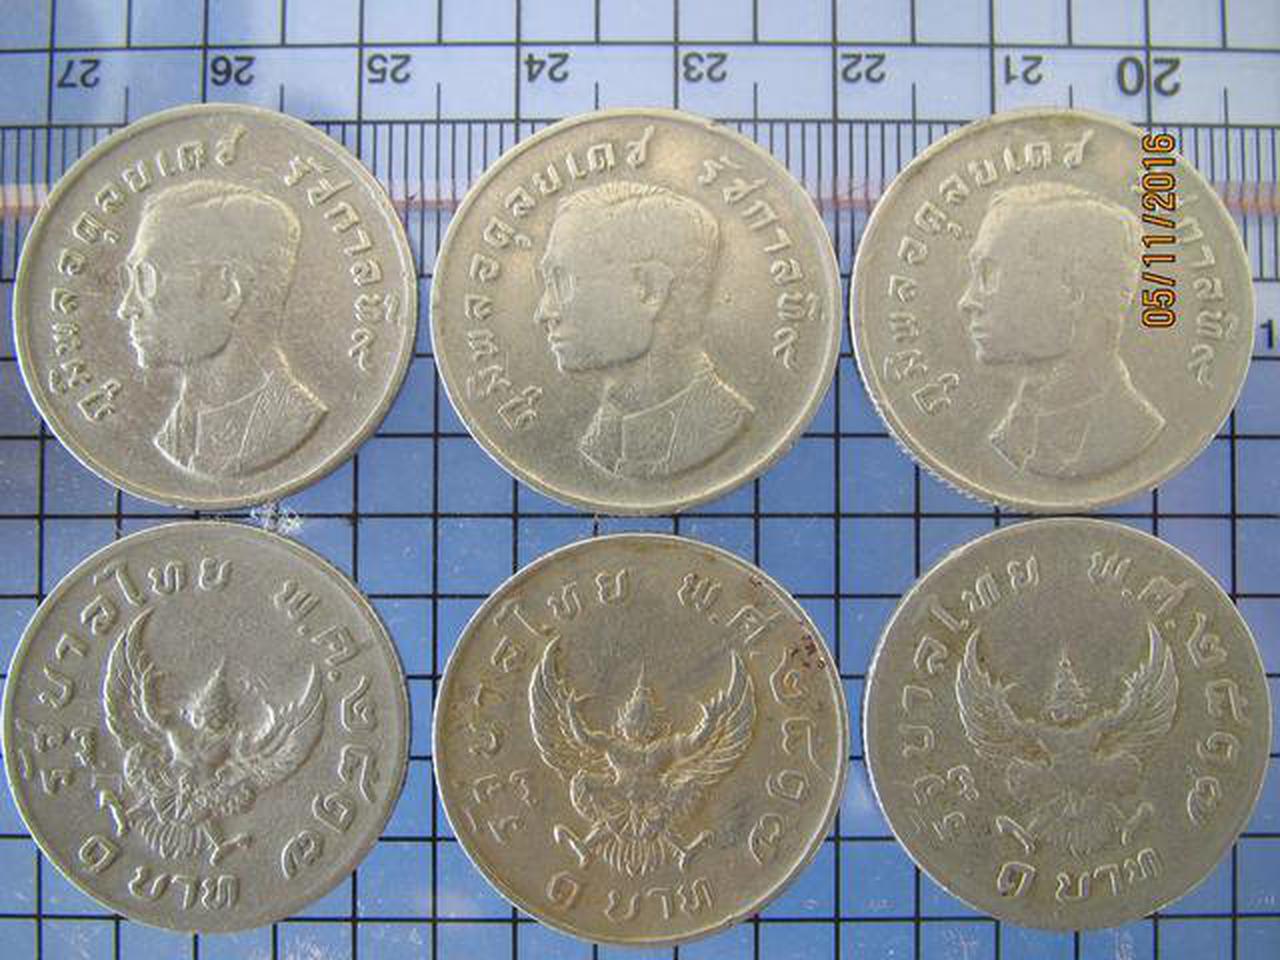 045 เหรียญกษาปณ์หายาก เหรียญ 1 บาท หลังครุฑ ปี 2517 รัชกาลที รูปเล็กที่ 1